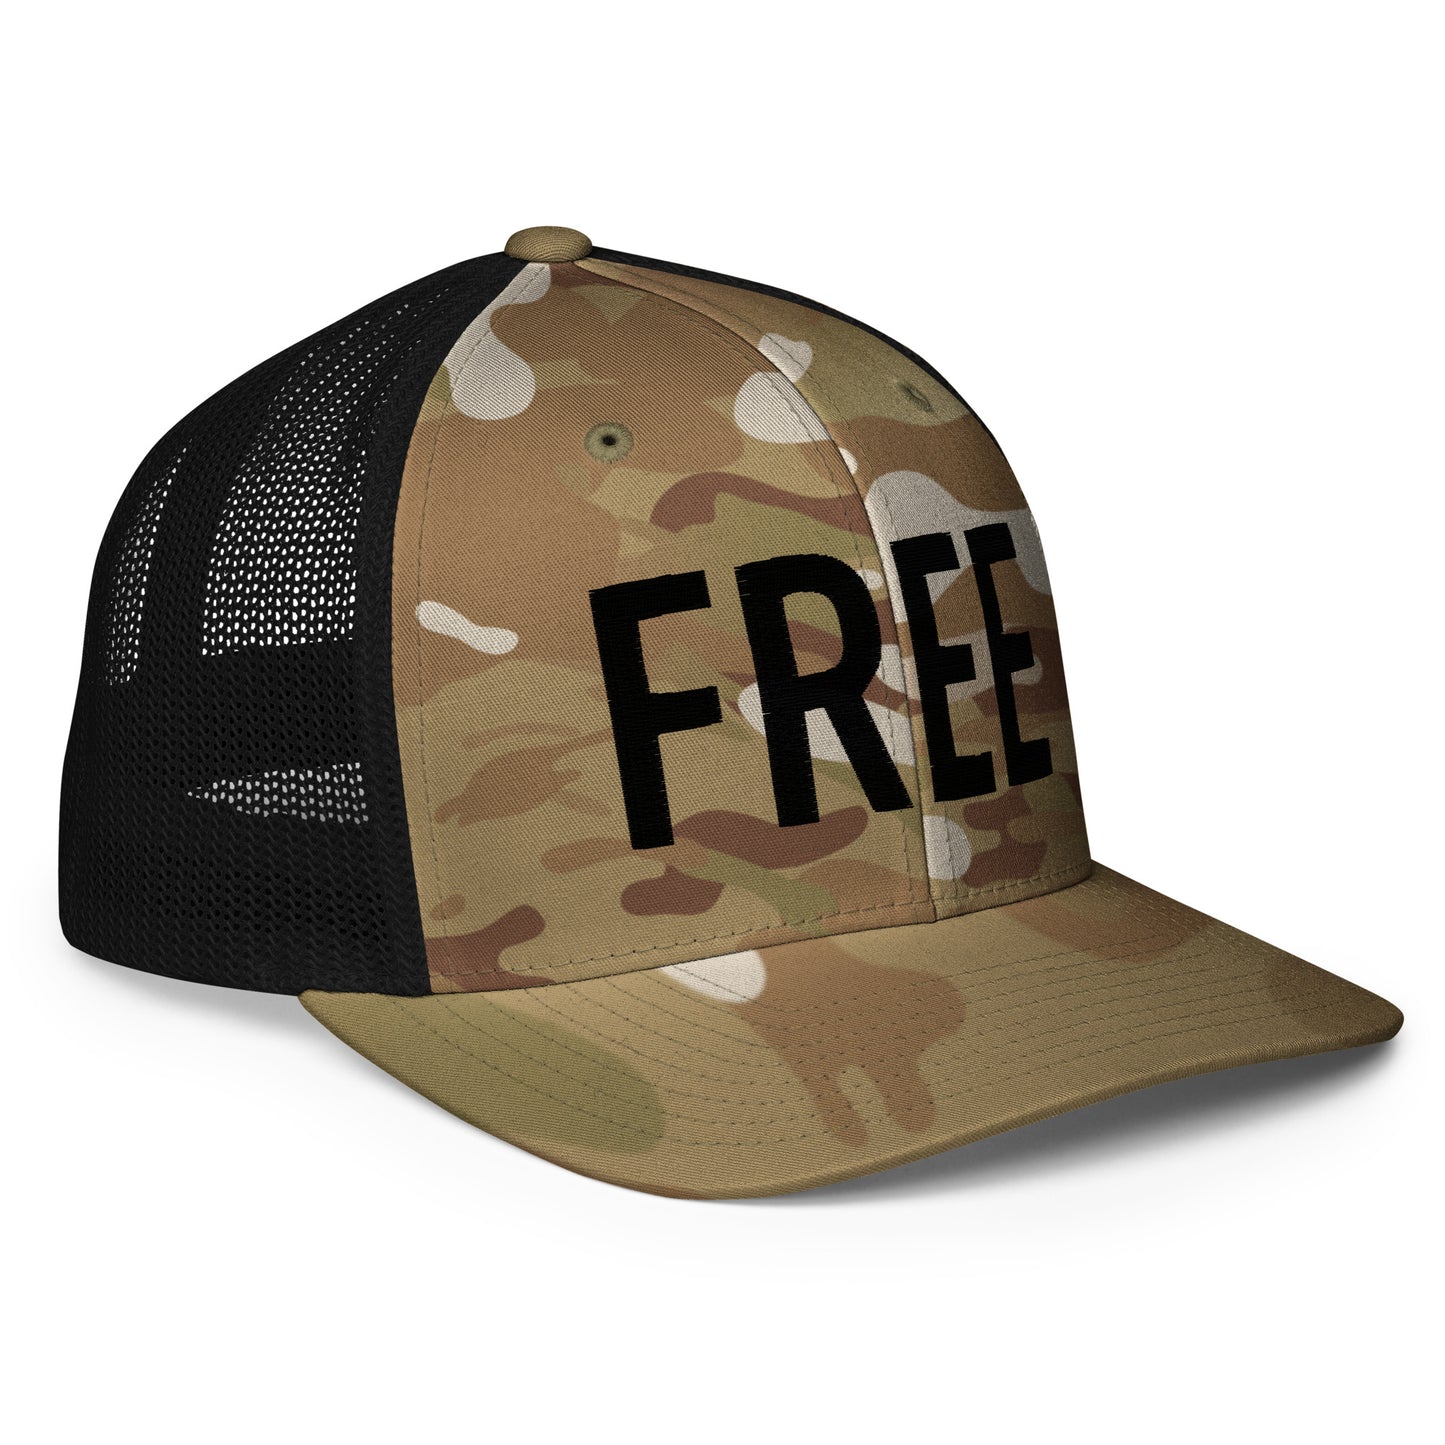 FREE Flexfit Trucker Hat